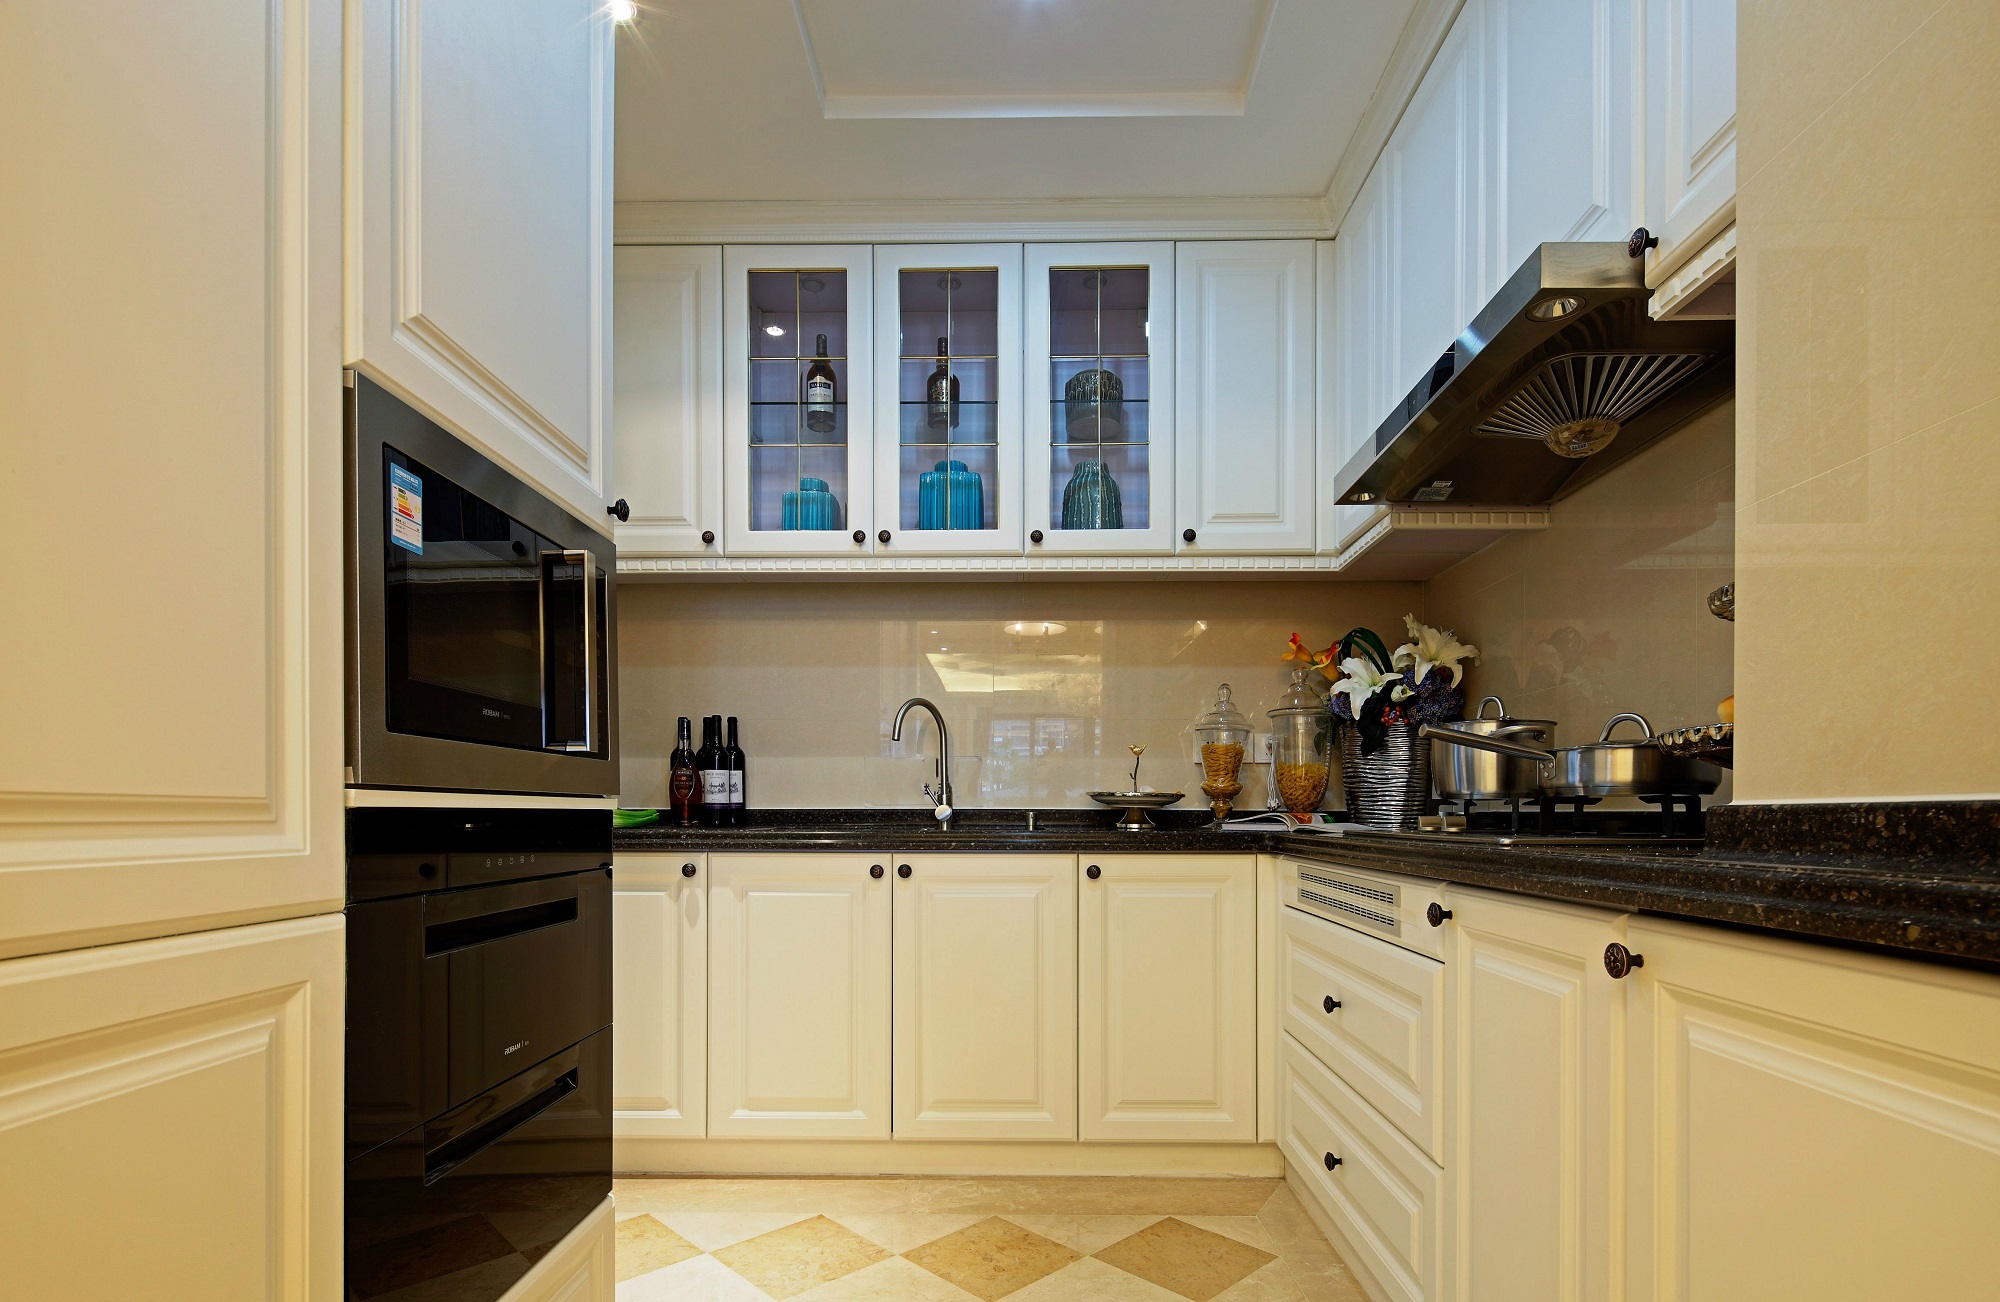 厨房白色橱柜+黑色纹理大理石台面，质朴自然；一连串的吊柜搭配底柜，超强收纳也是极赞的。